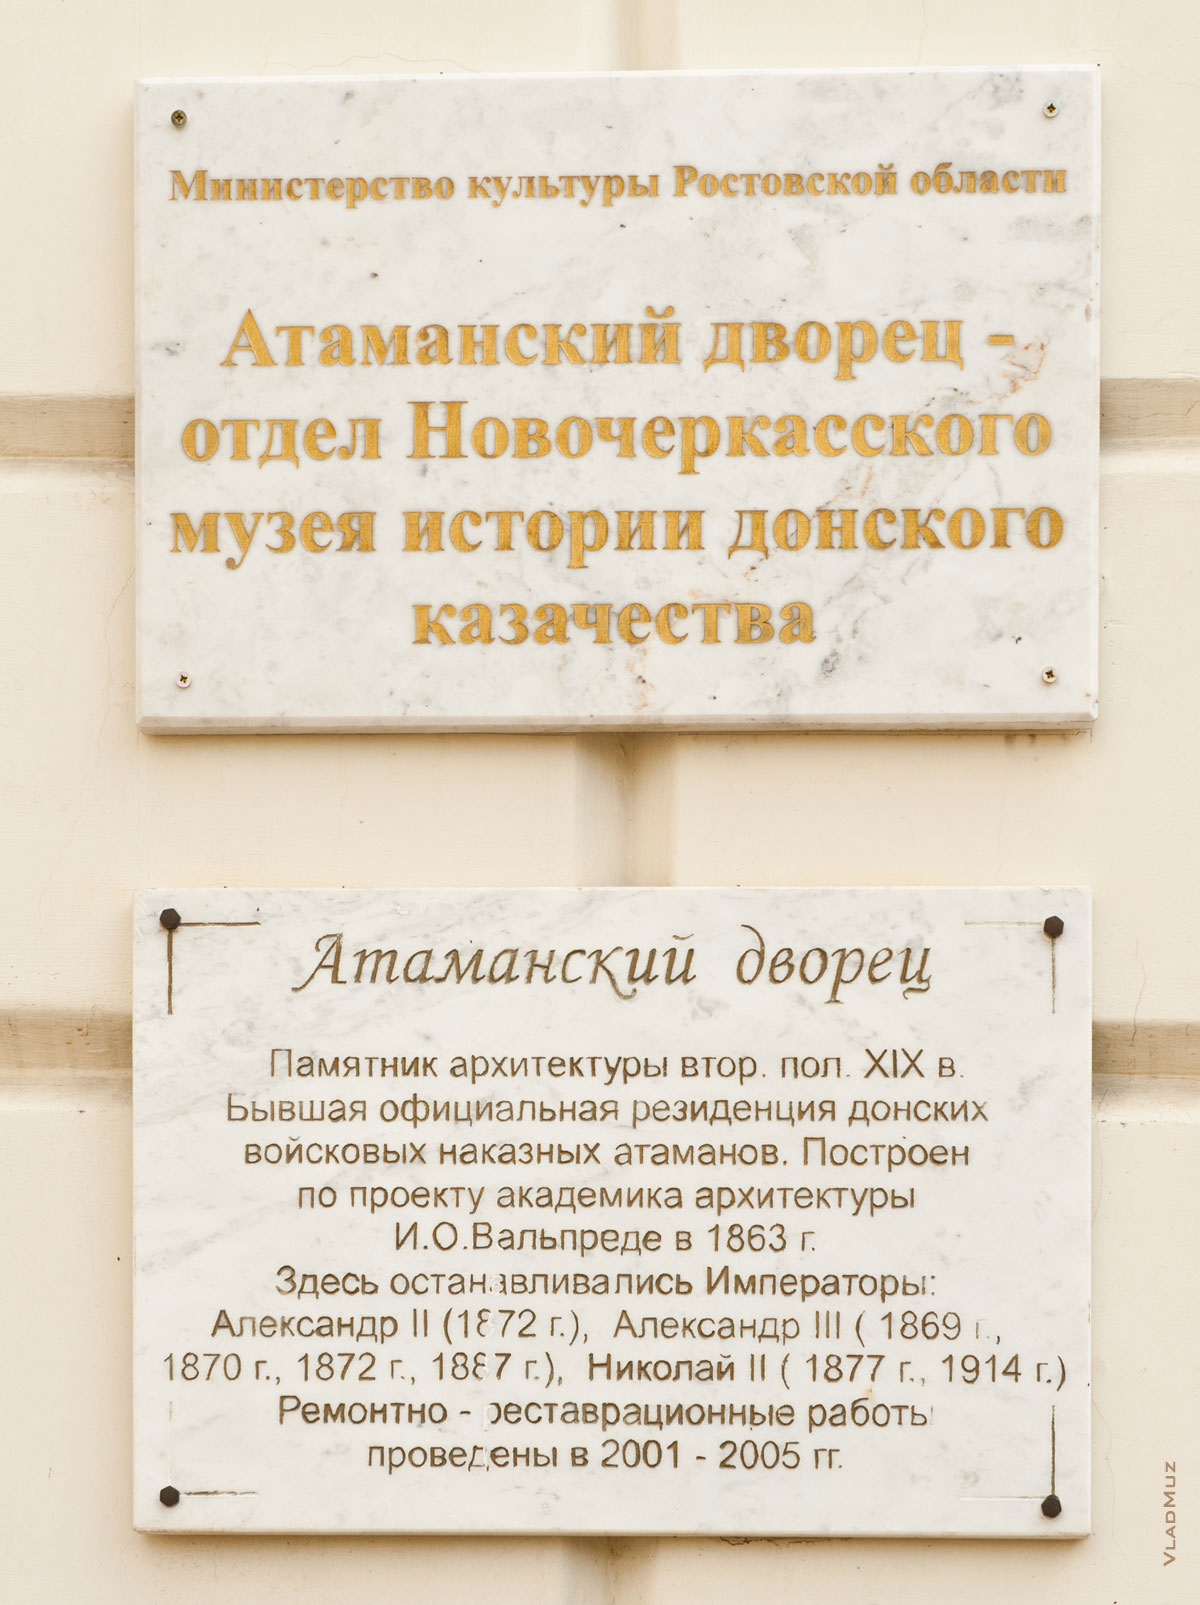 Фото таблички на здании Атаманского дворца в Новочеркасске